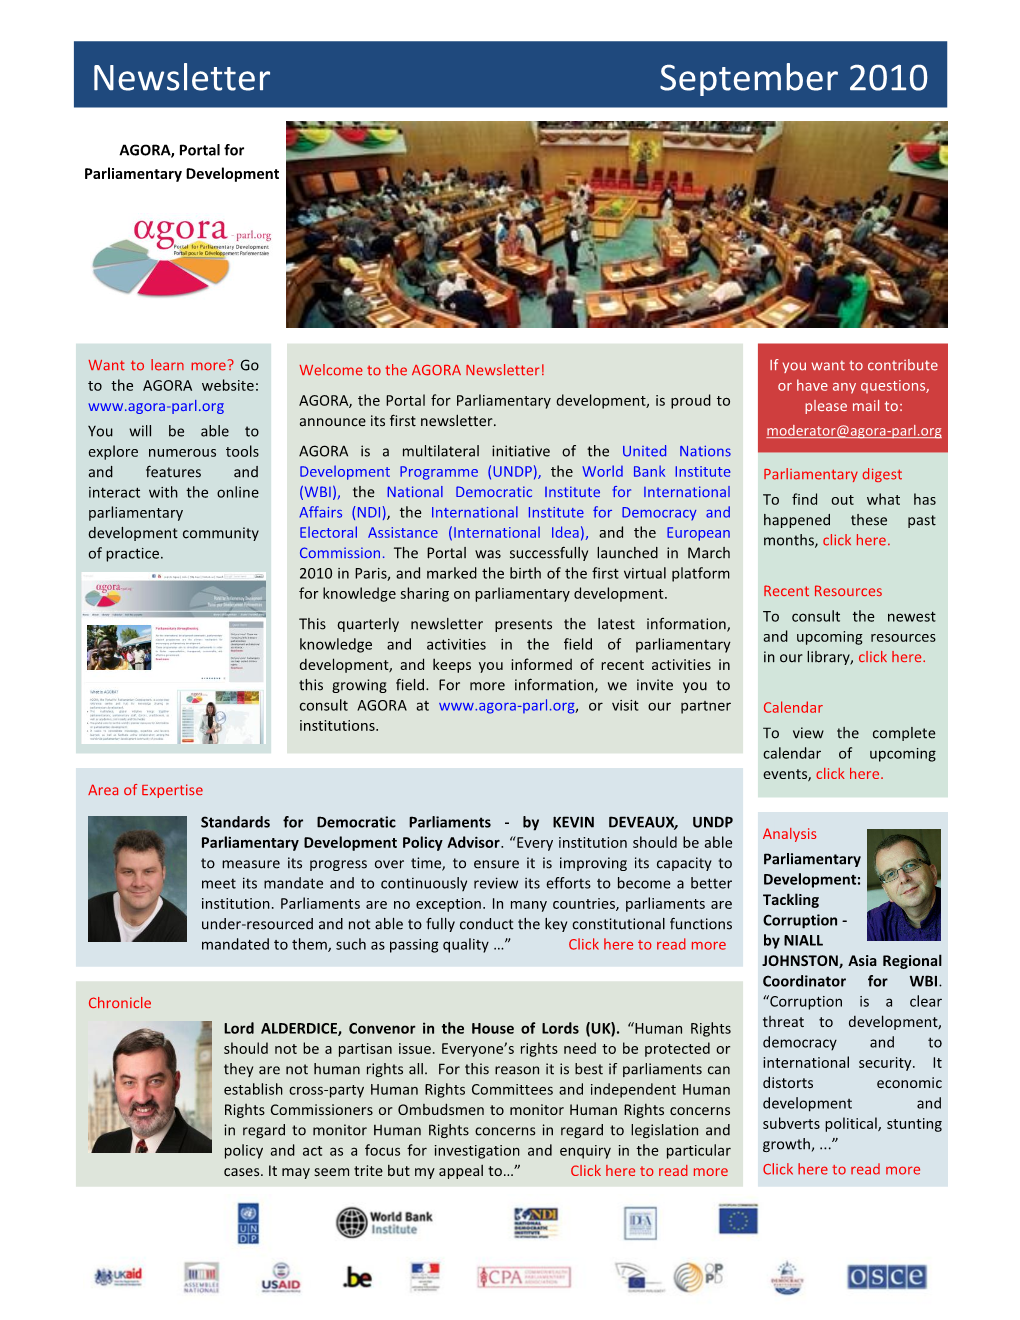 AGORA Newsletter (September 2010)